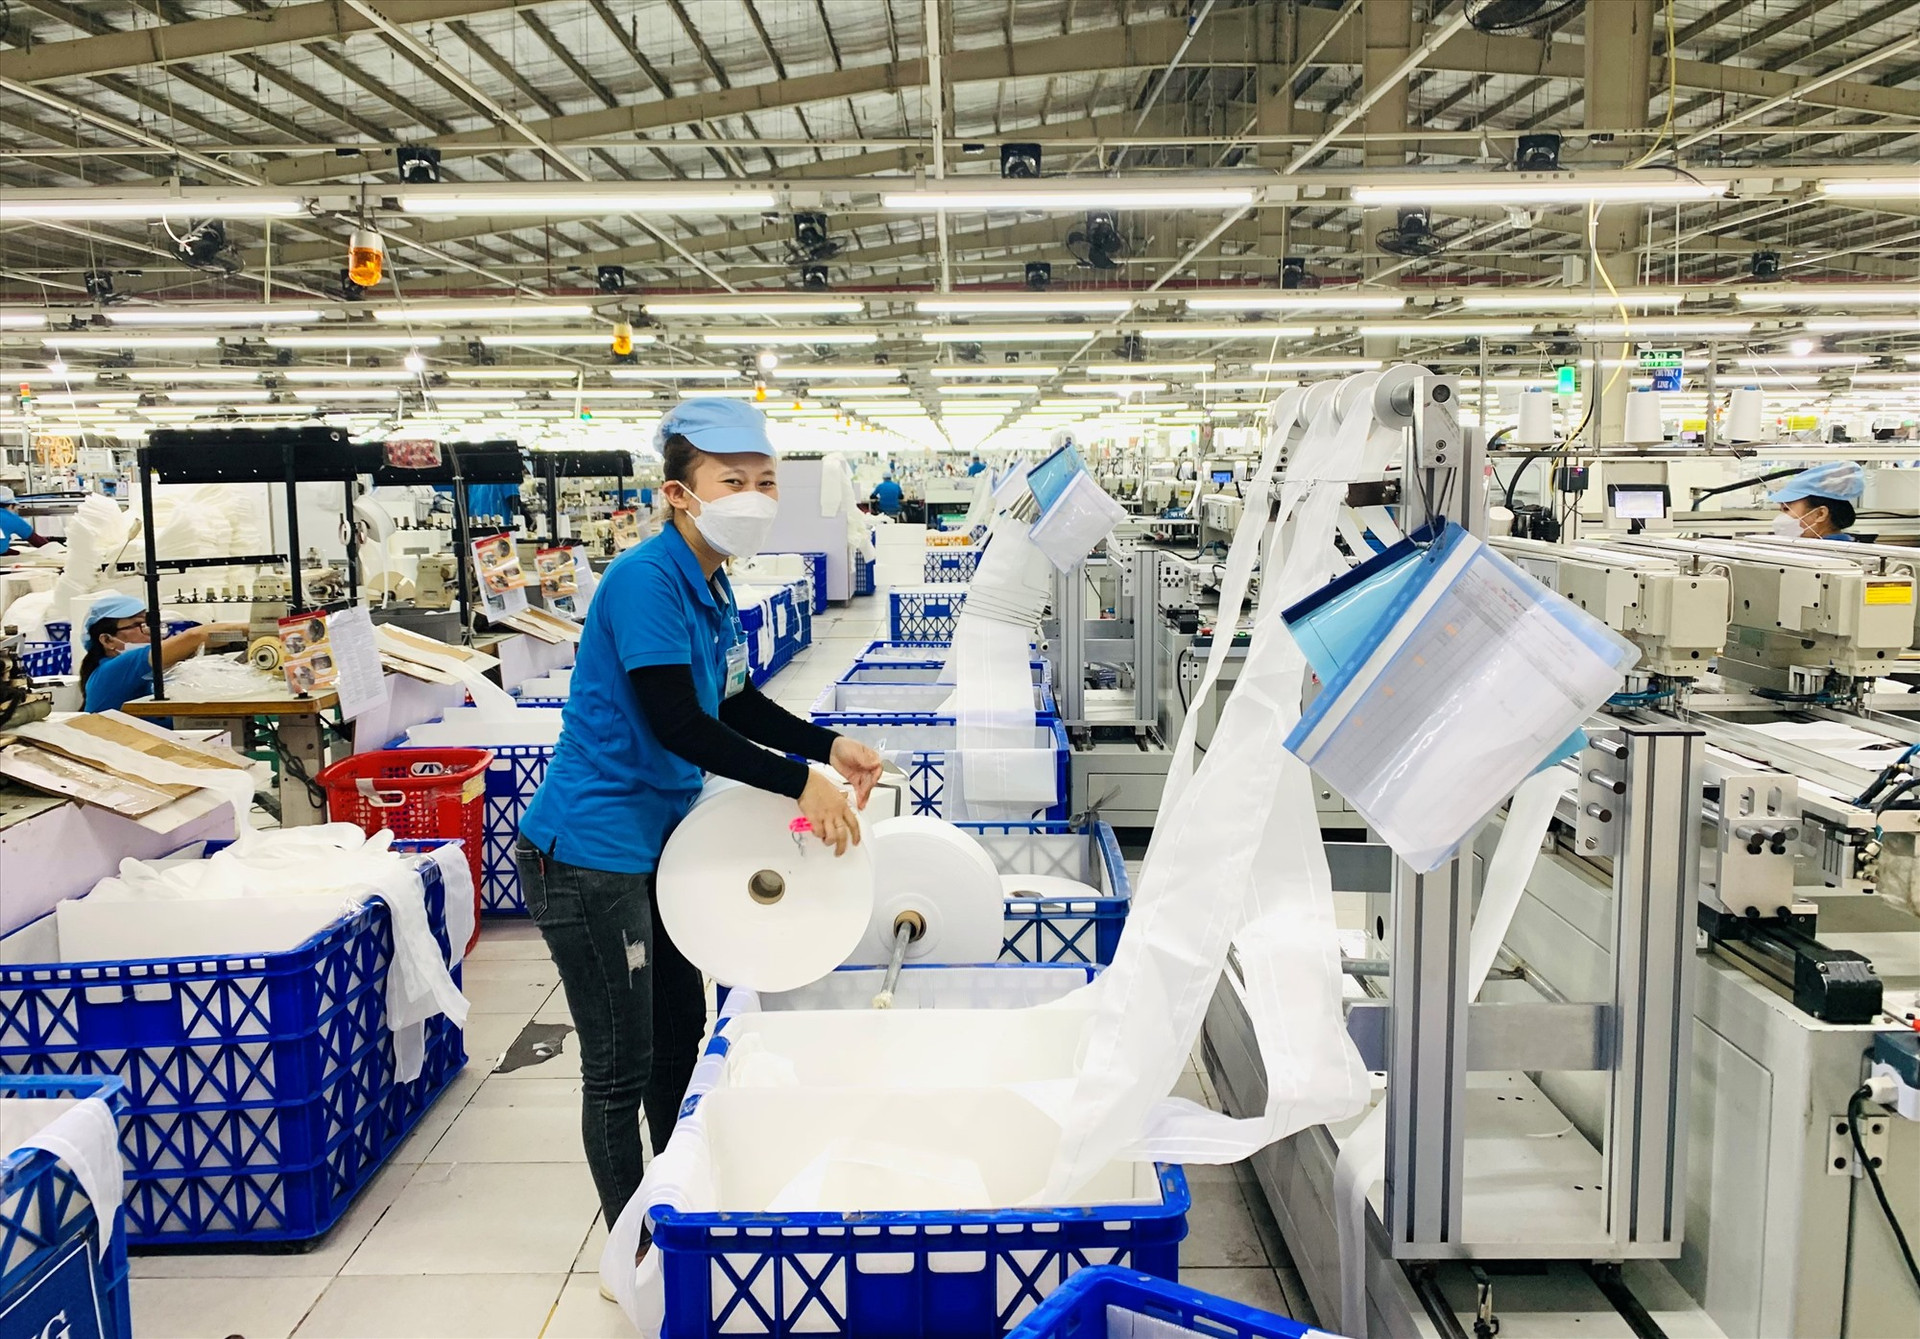 Giá trị sản xuất công nghiệp – tiểu thủ công nghiệp của Duy Xuyên trong quý I năm 2023 đạt 810 tỷ đồng. Ảnh: N.T